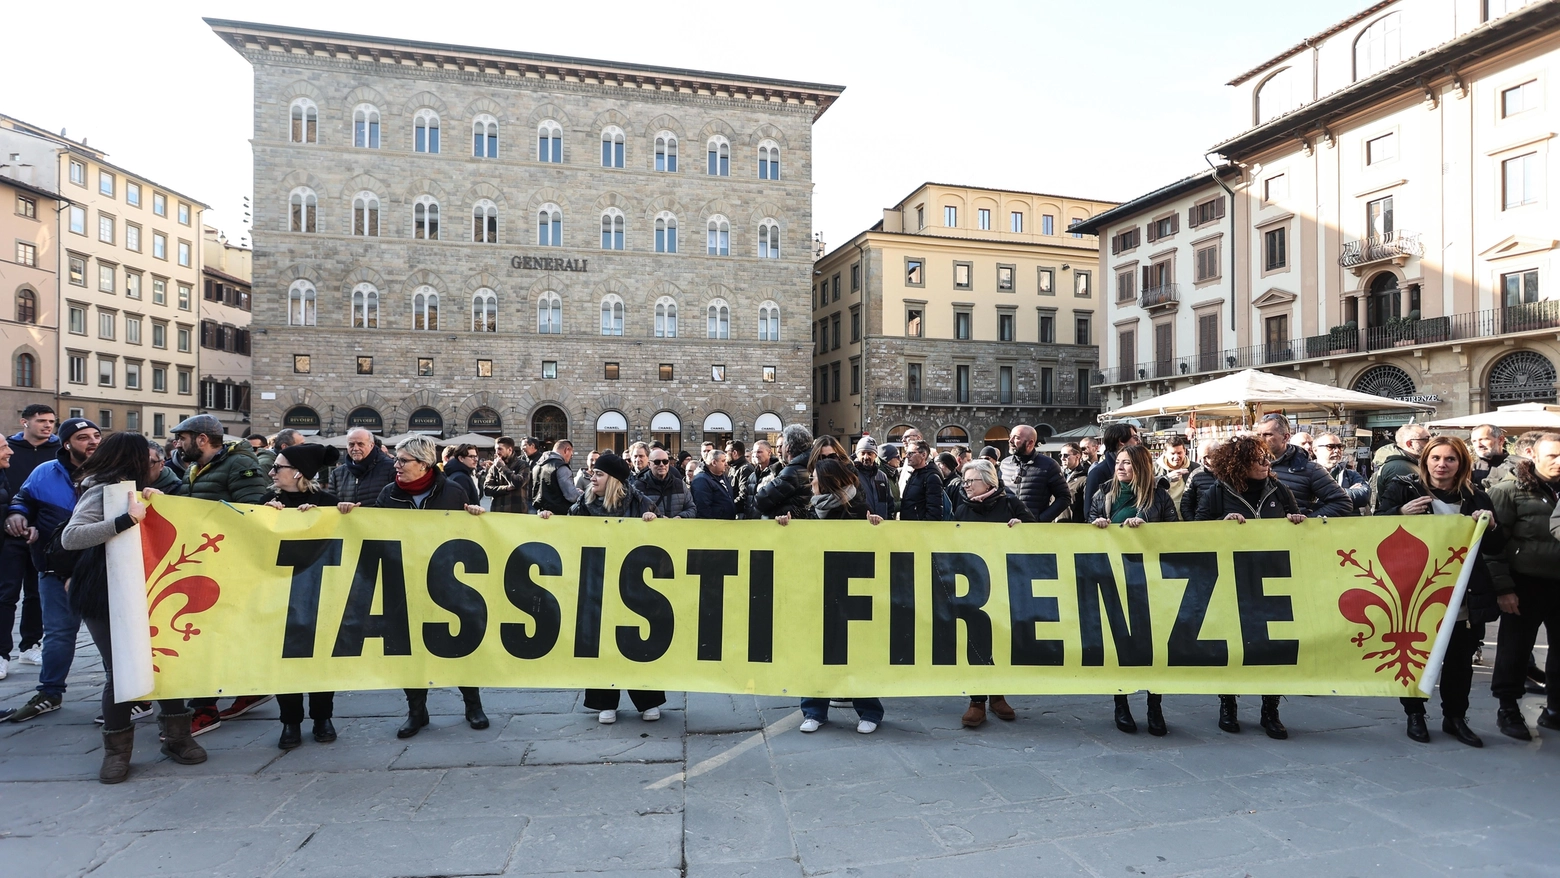 La protesta dei tassisti a Firenze (foto NewPressPhoto)